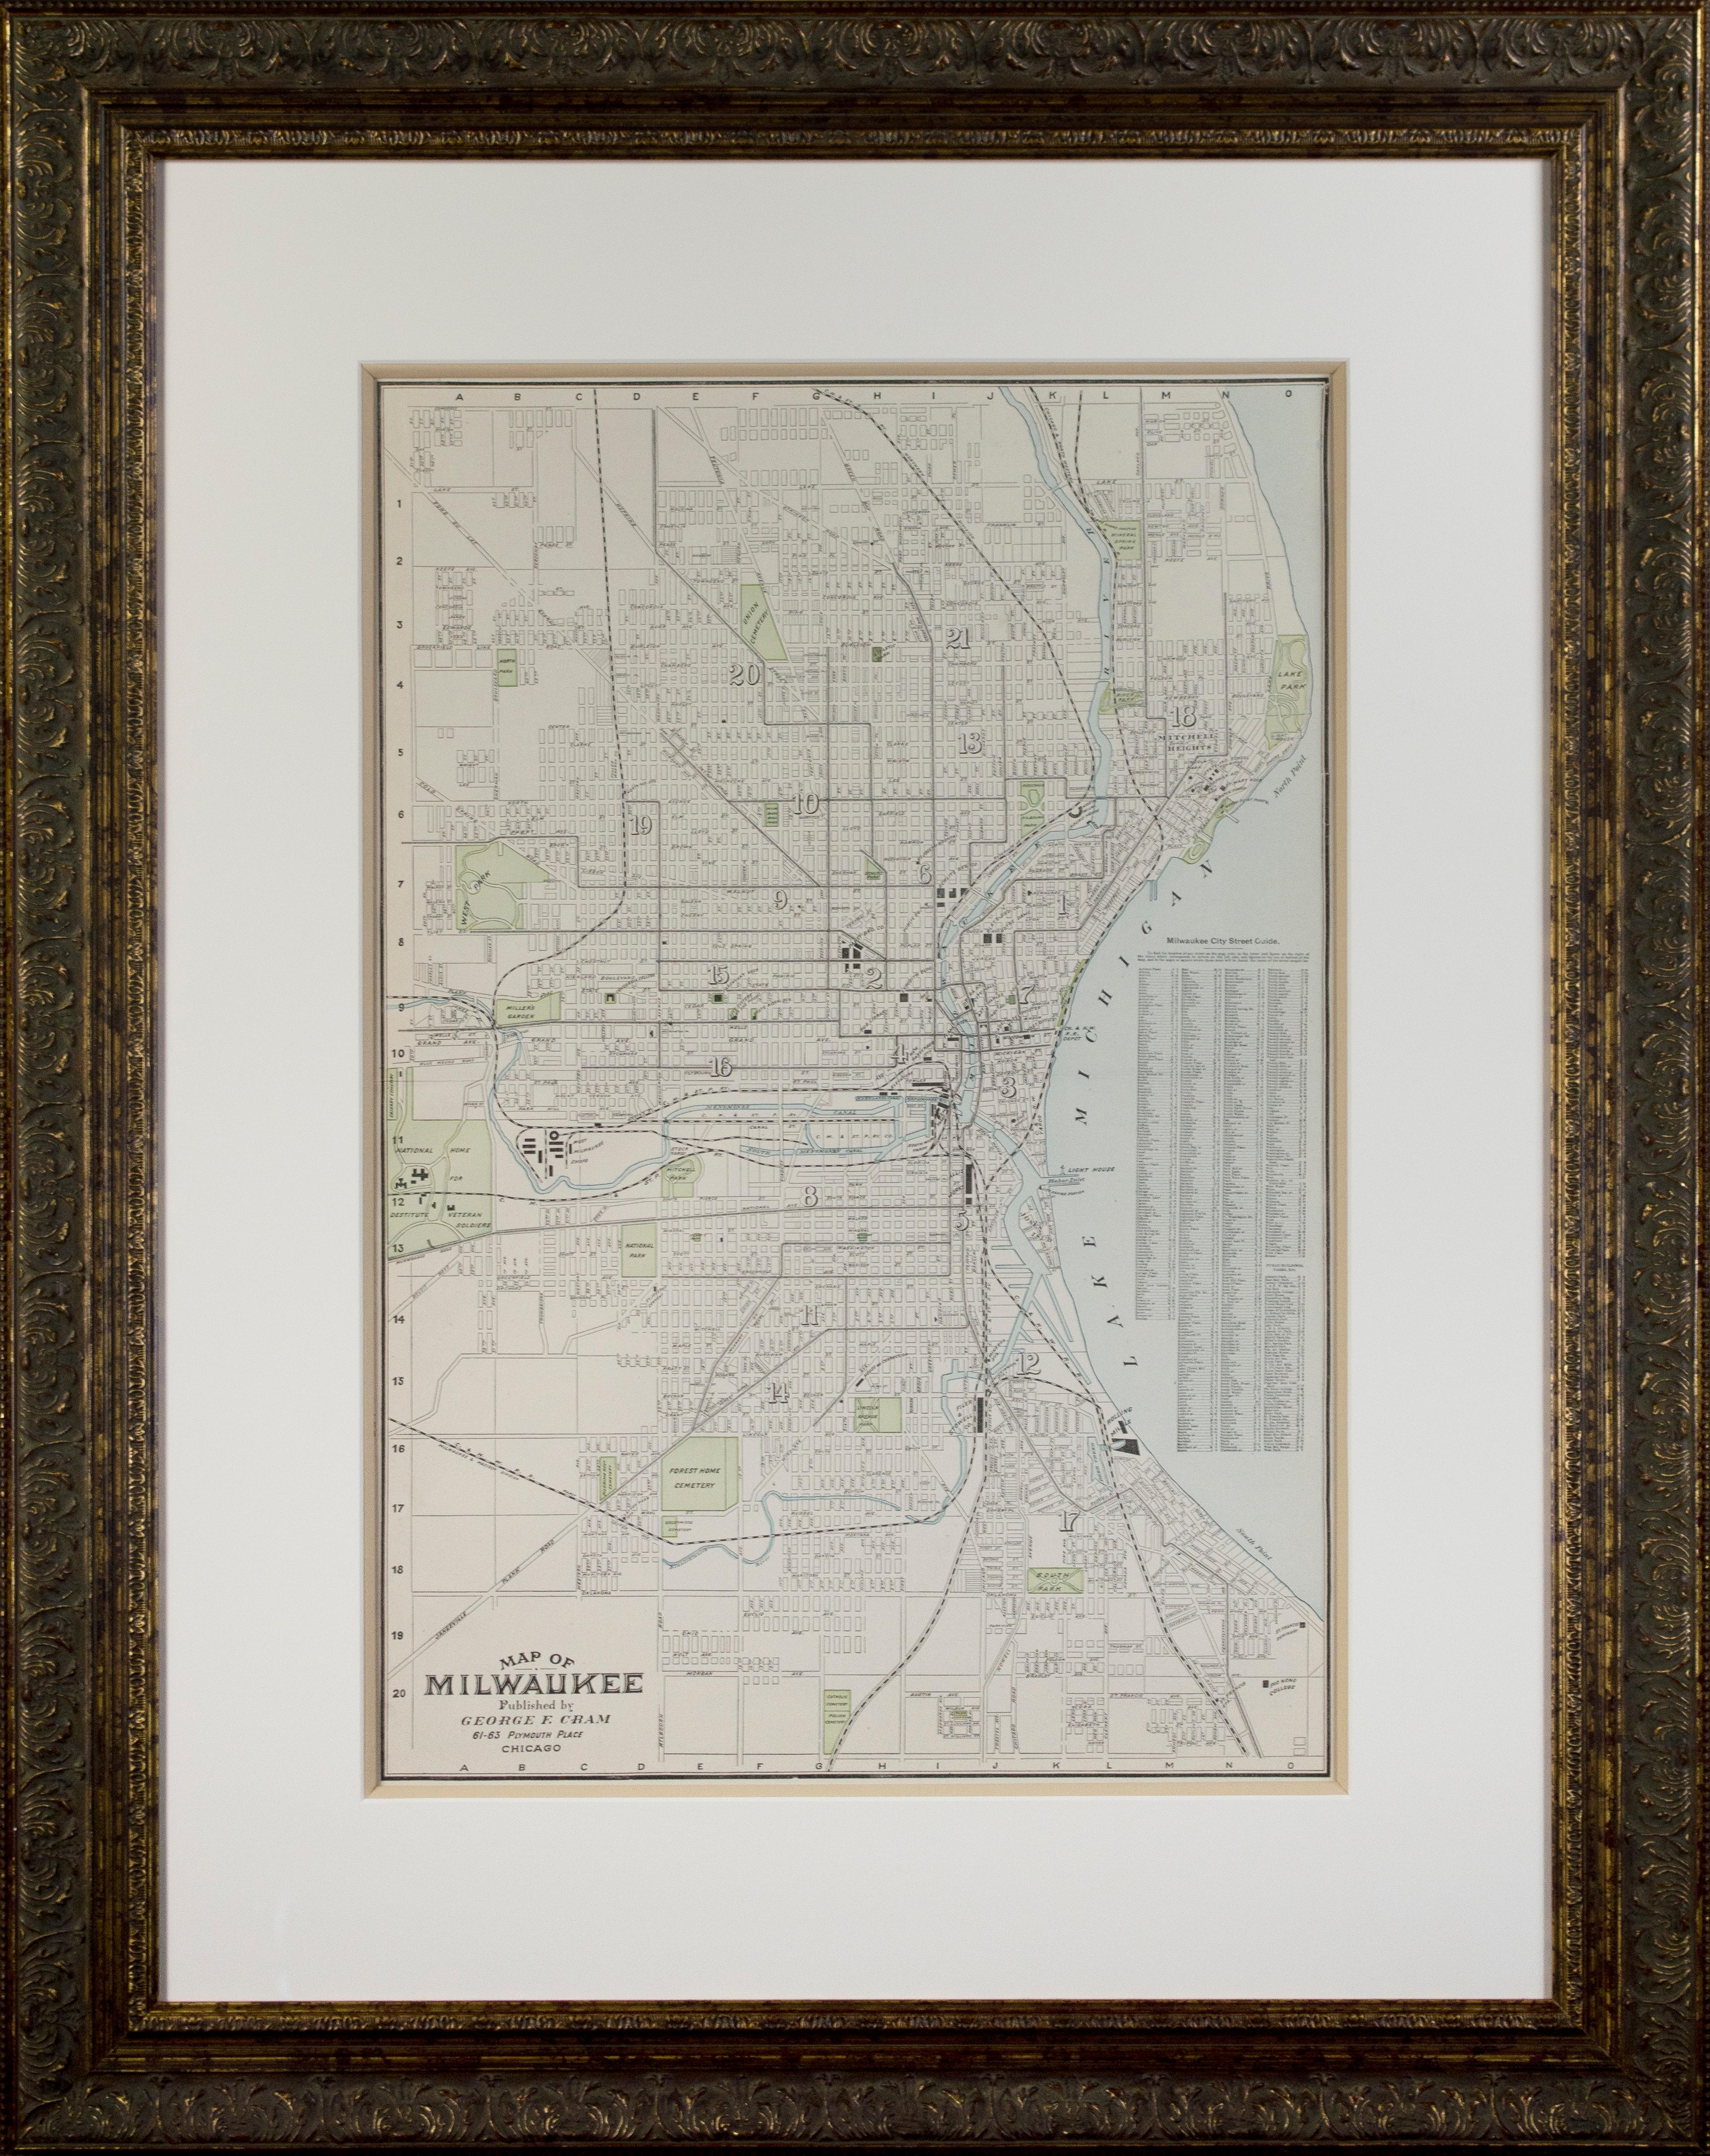 Lithographie en couleur « Map of Milwaukee » publiée par George F. Cram of Chicago